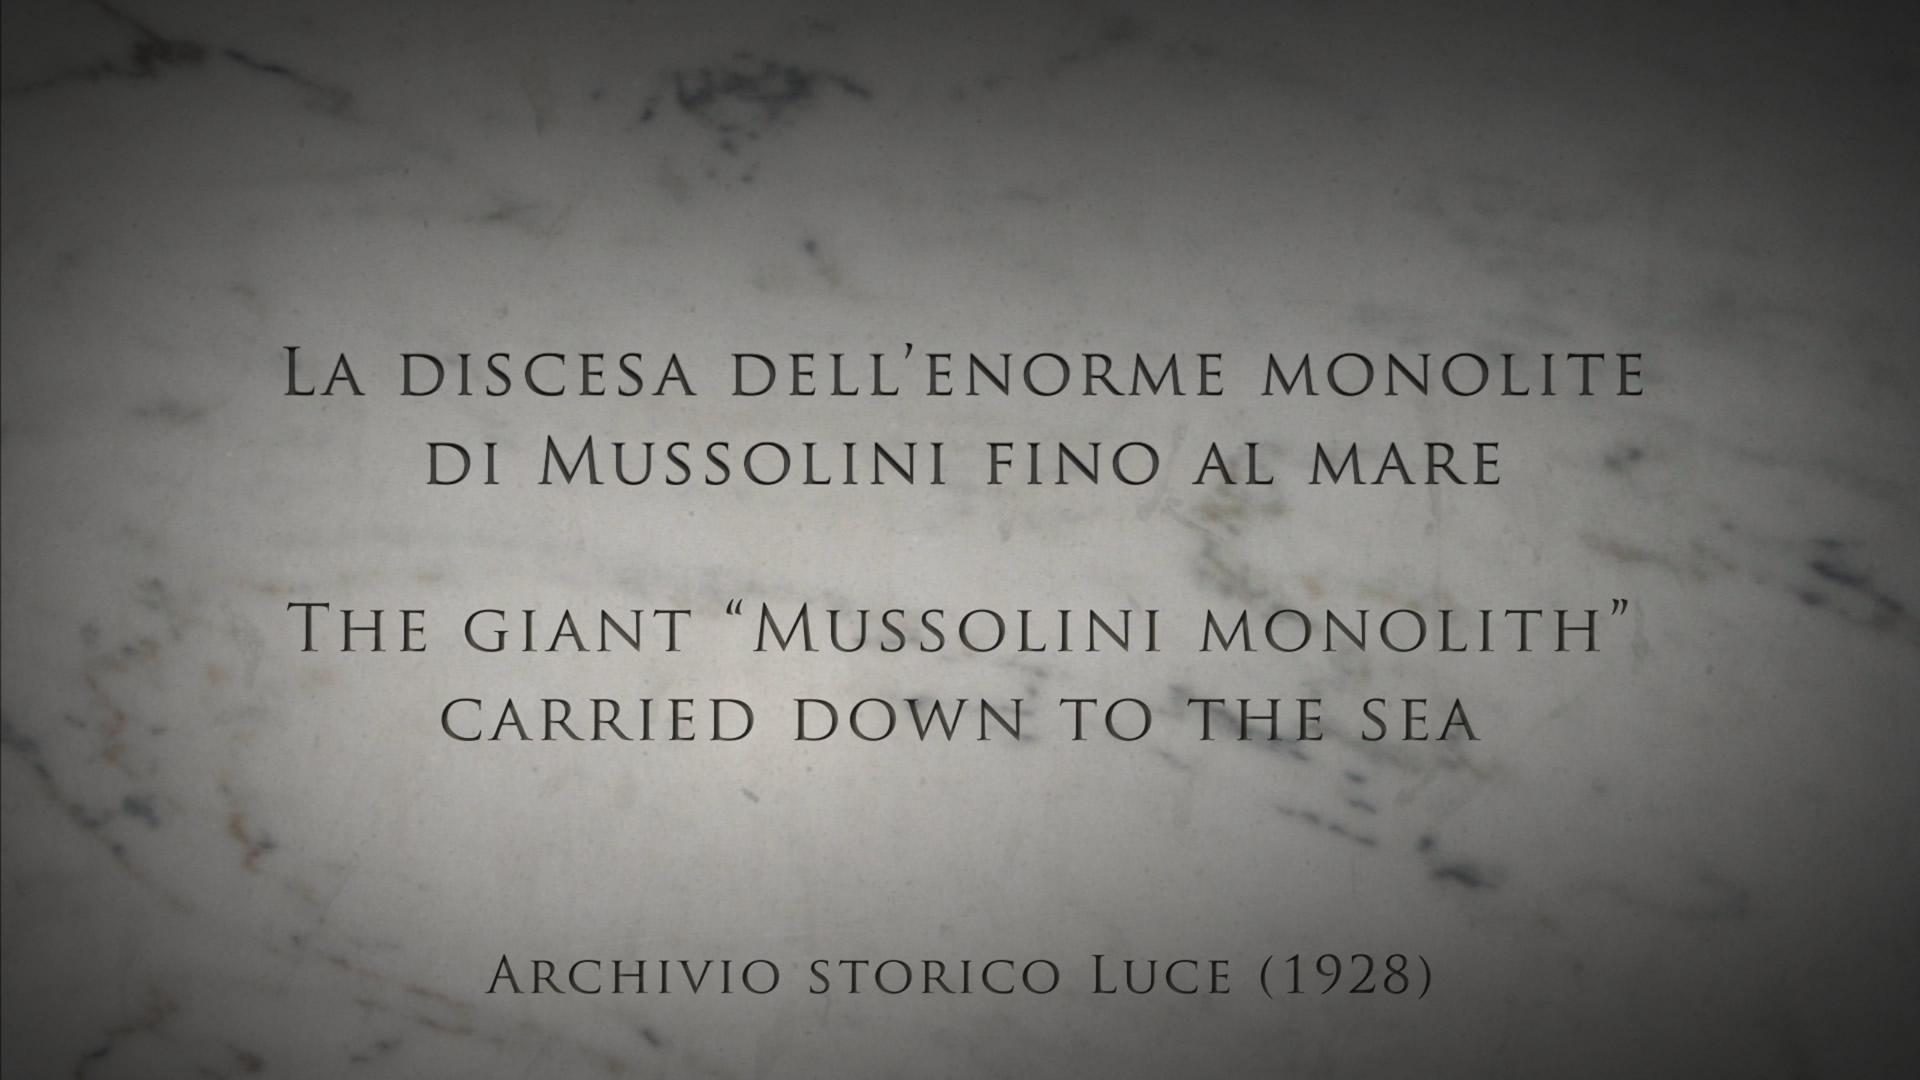 La discesa dell'enorme monolite di Mussolini fino al mare